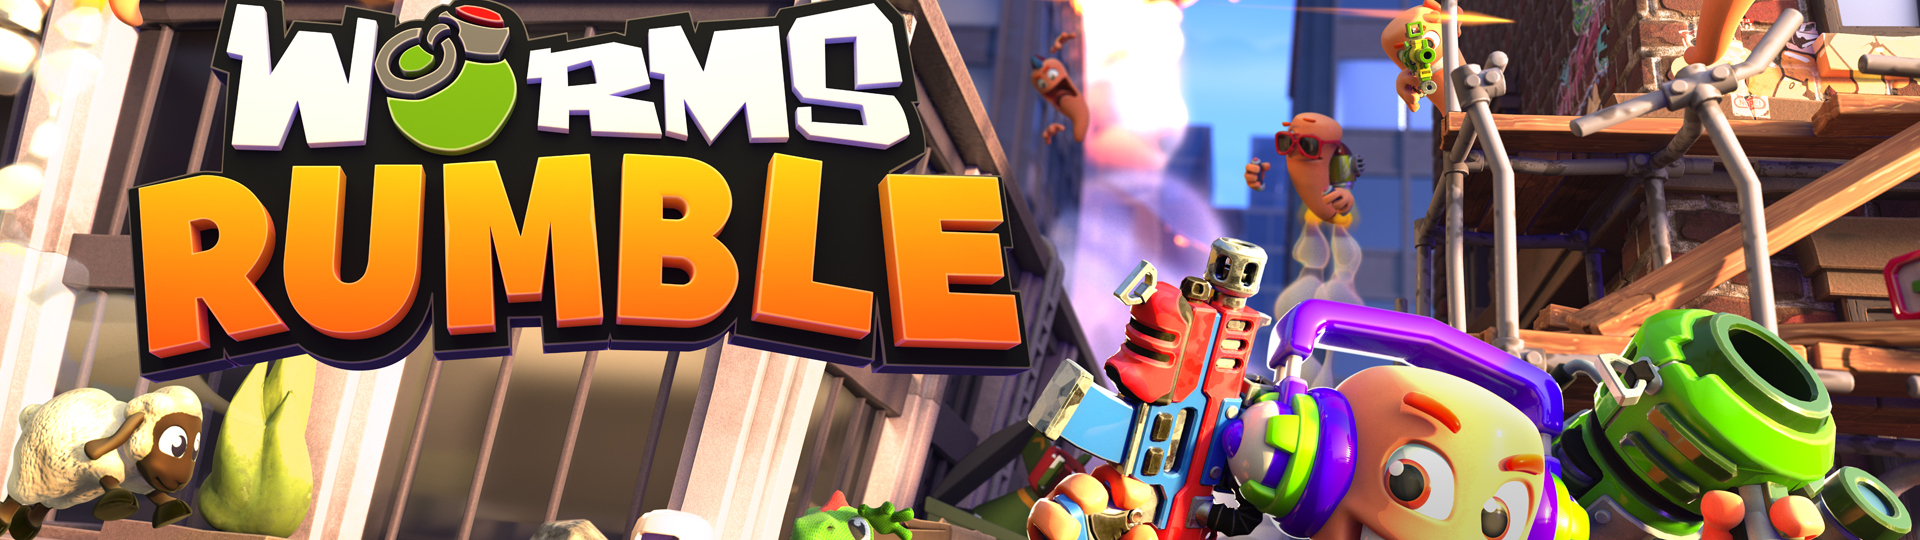 Worms Rumble beta je aktuálně v běhu až do pondělka | Videa